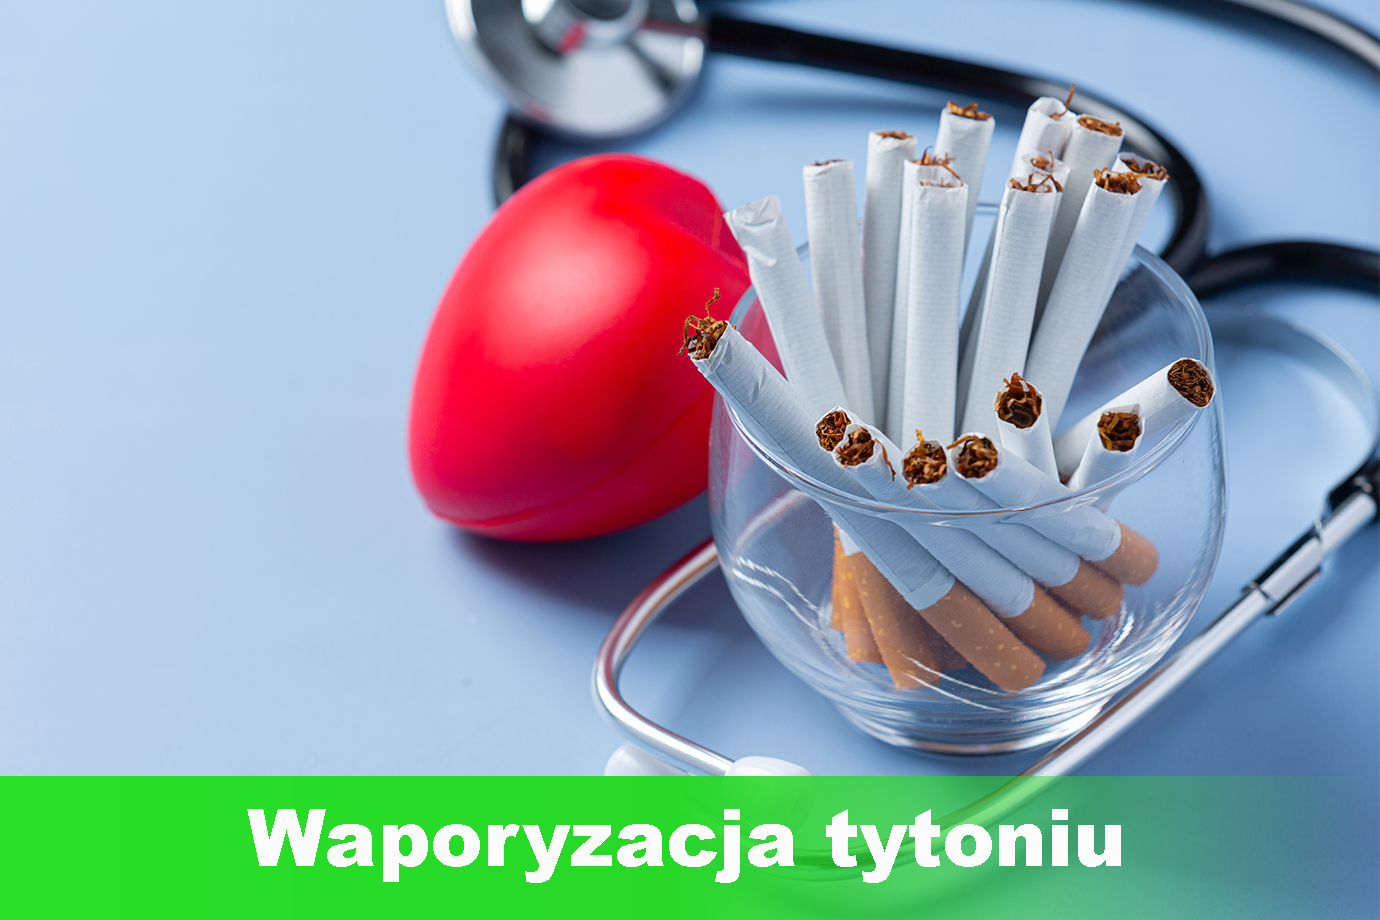 Czy waporyzacja tytoniu faktycznie jest mniej szkodliwa niż palenie?